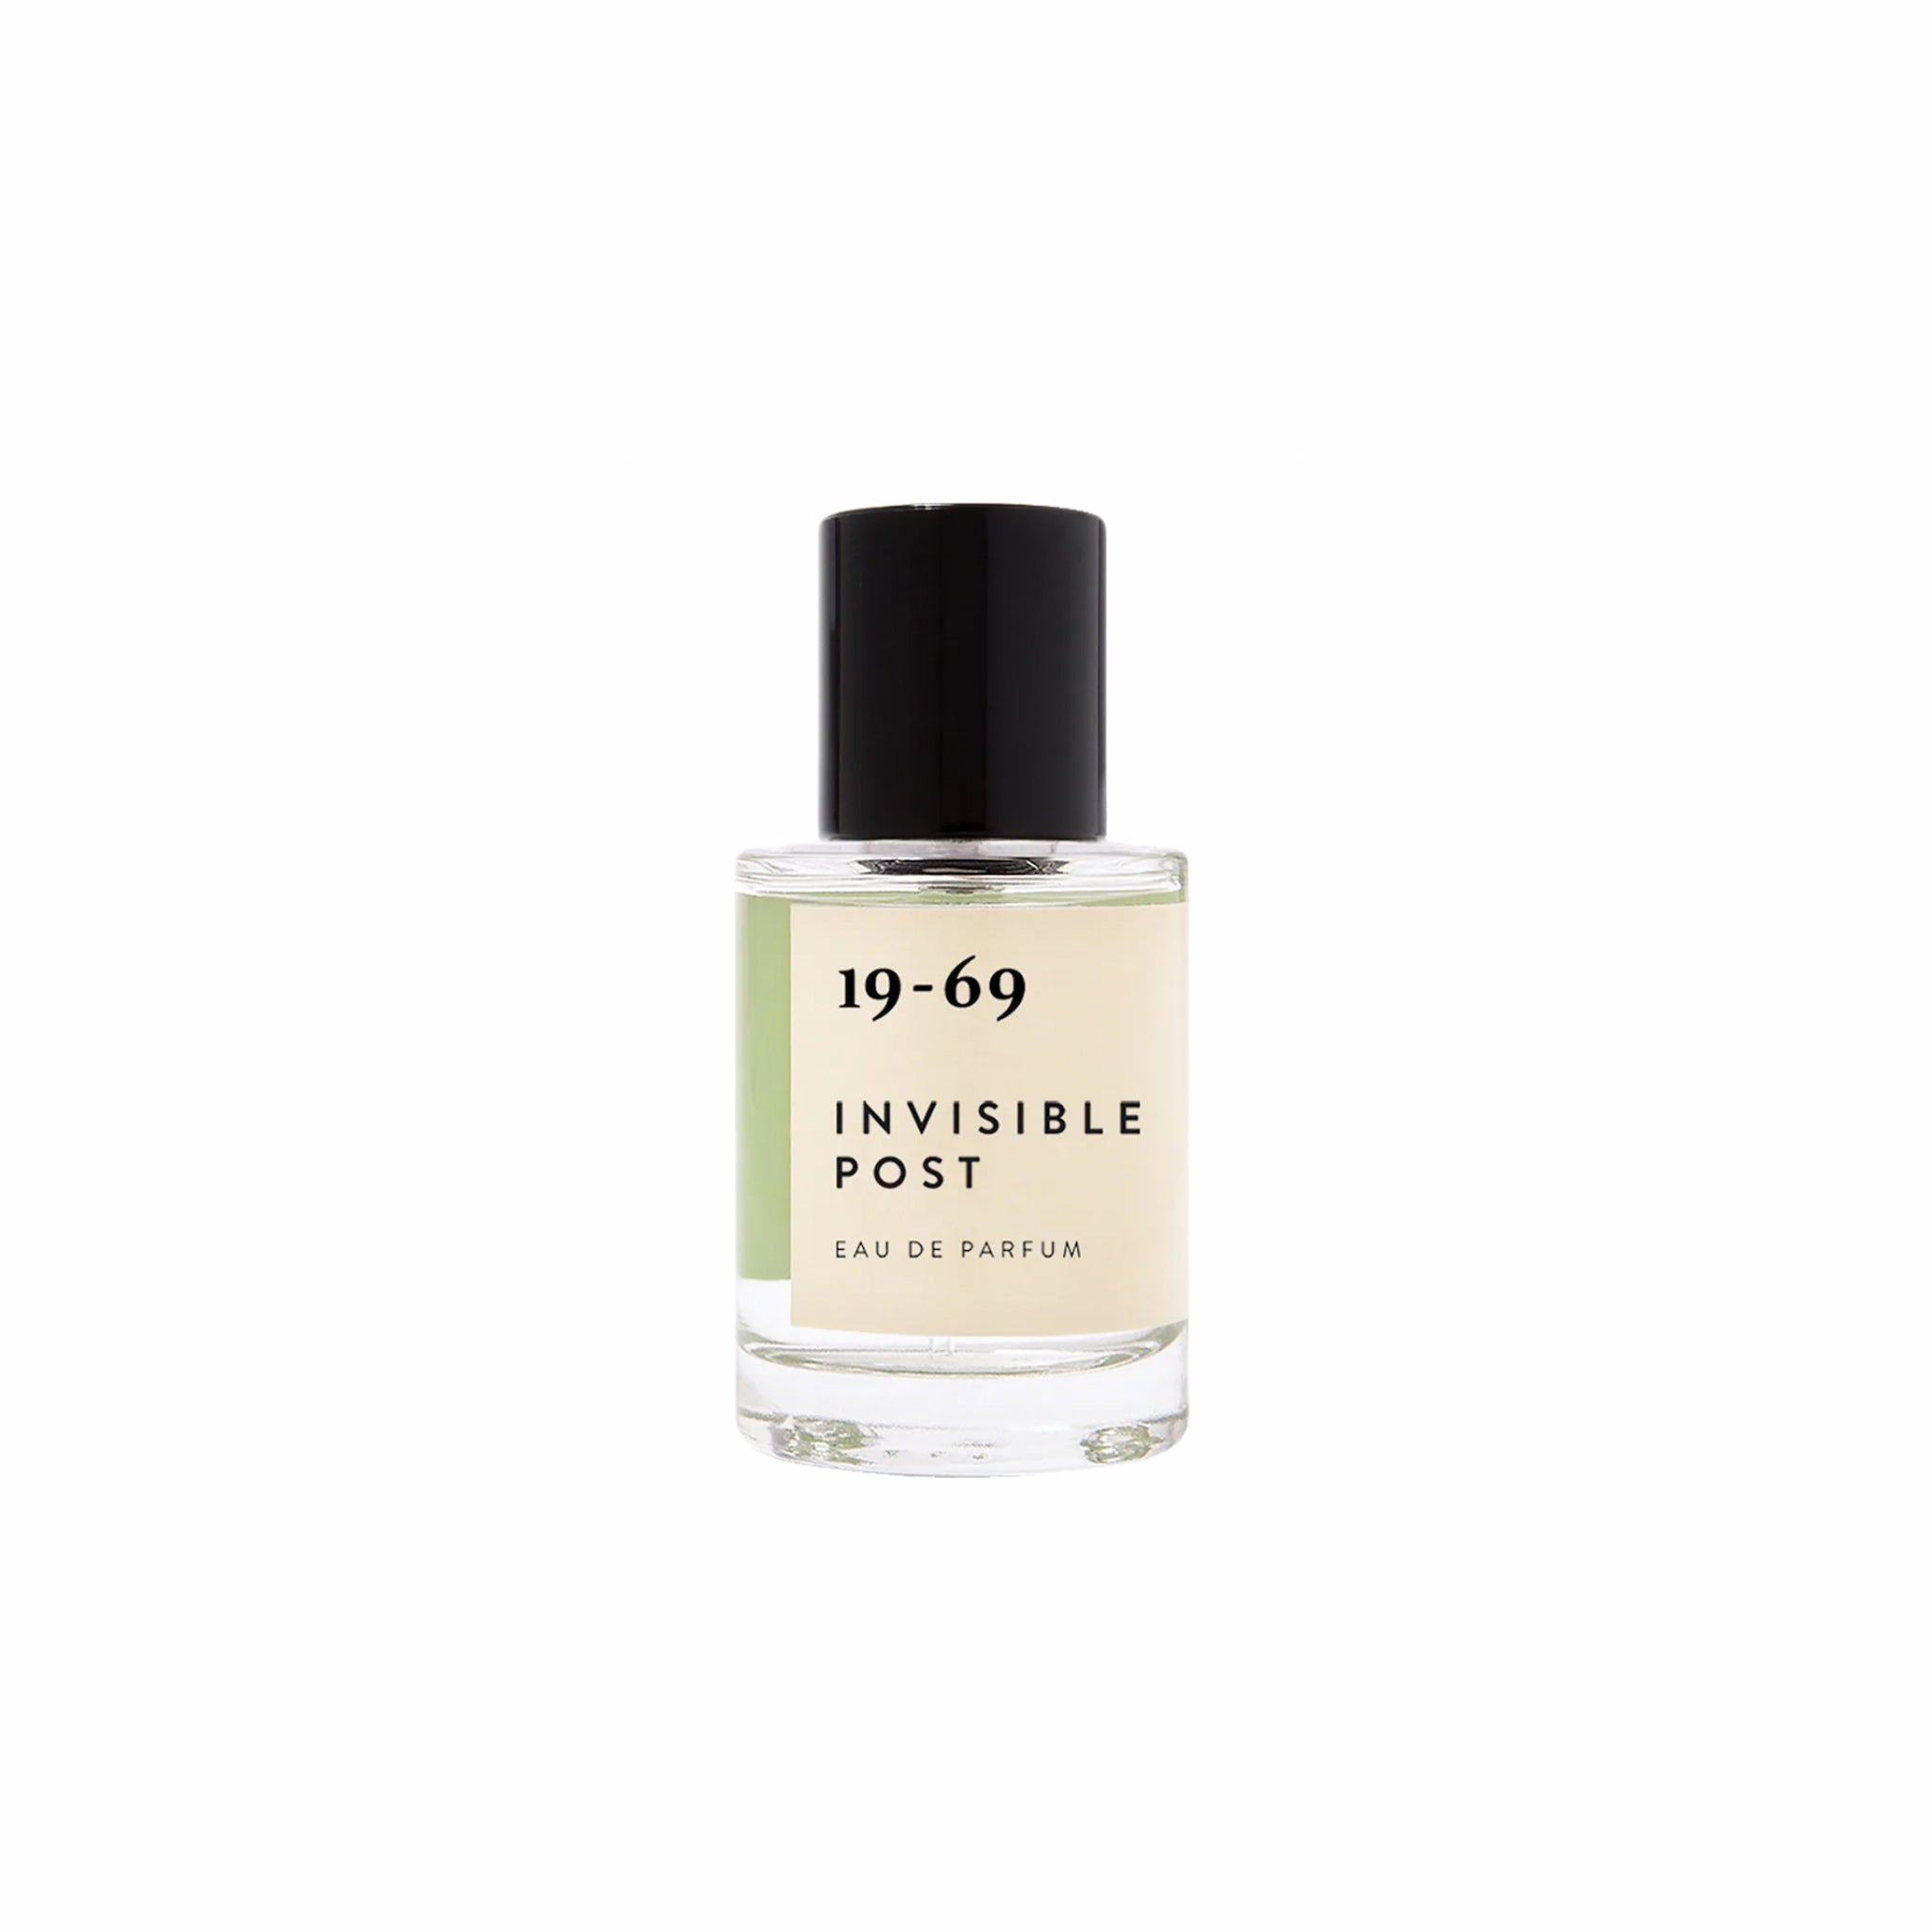 19-69 Invisible Post Eau de Parfum (30mL) - August Shop